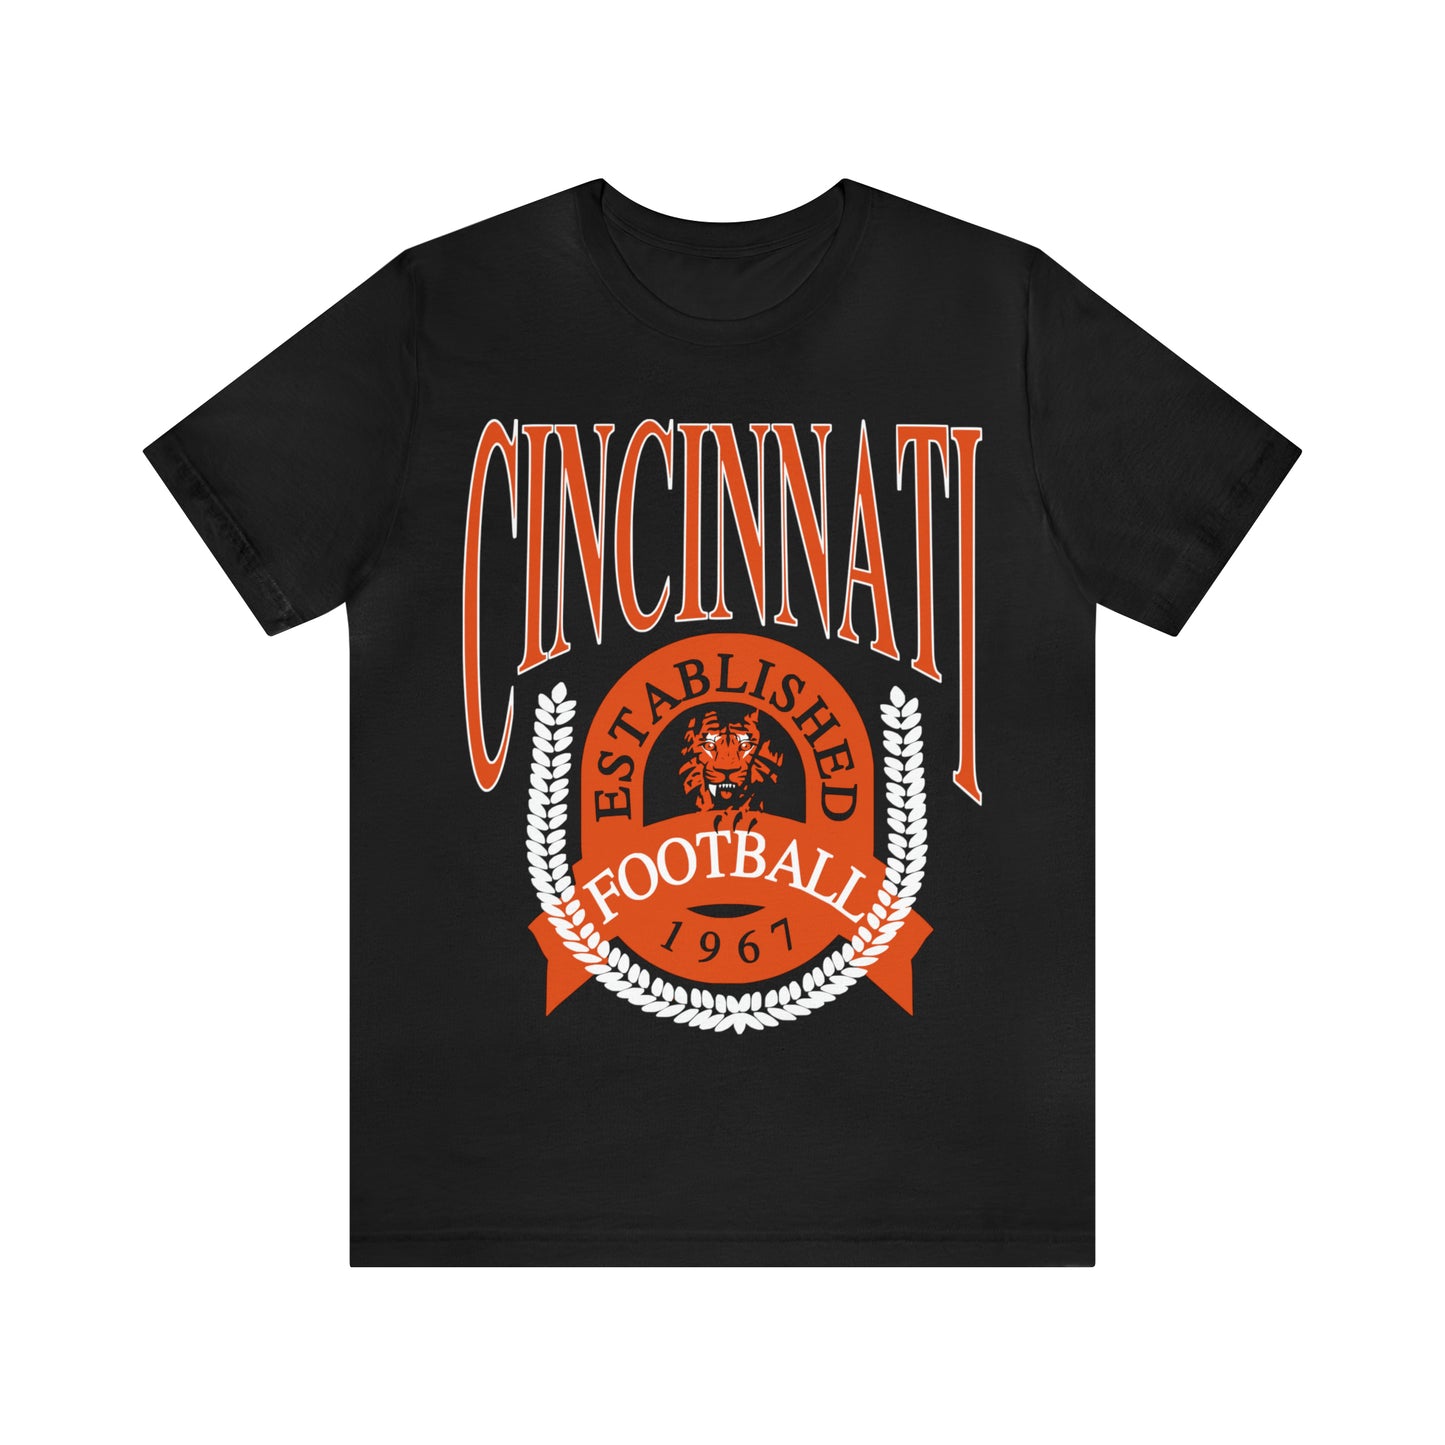 Cincinnati Bengals T-Shirt - Vintage Short Sleeve Bengals Tee - NFL Football Oversized Unisex, Men's & Women's Apparel - Design 1 Black